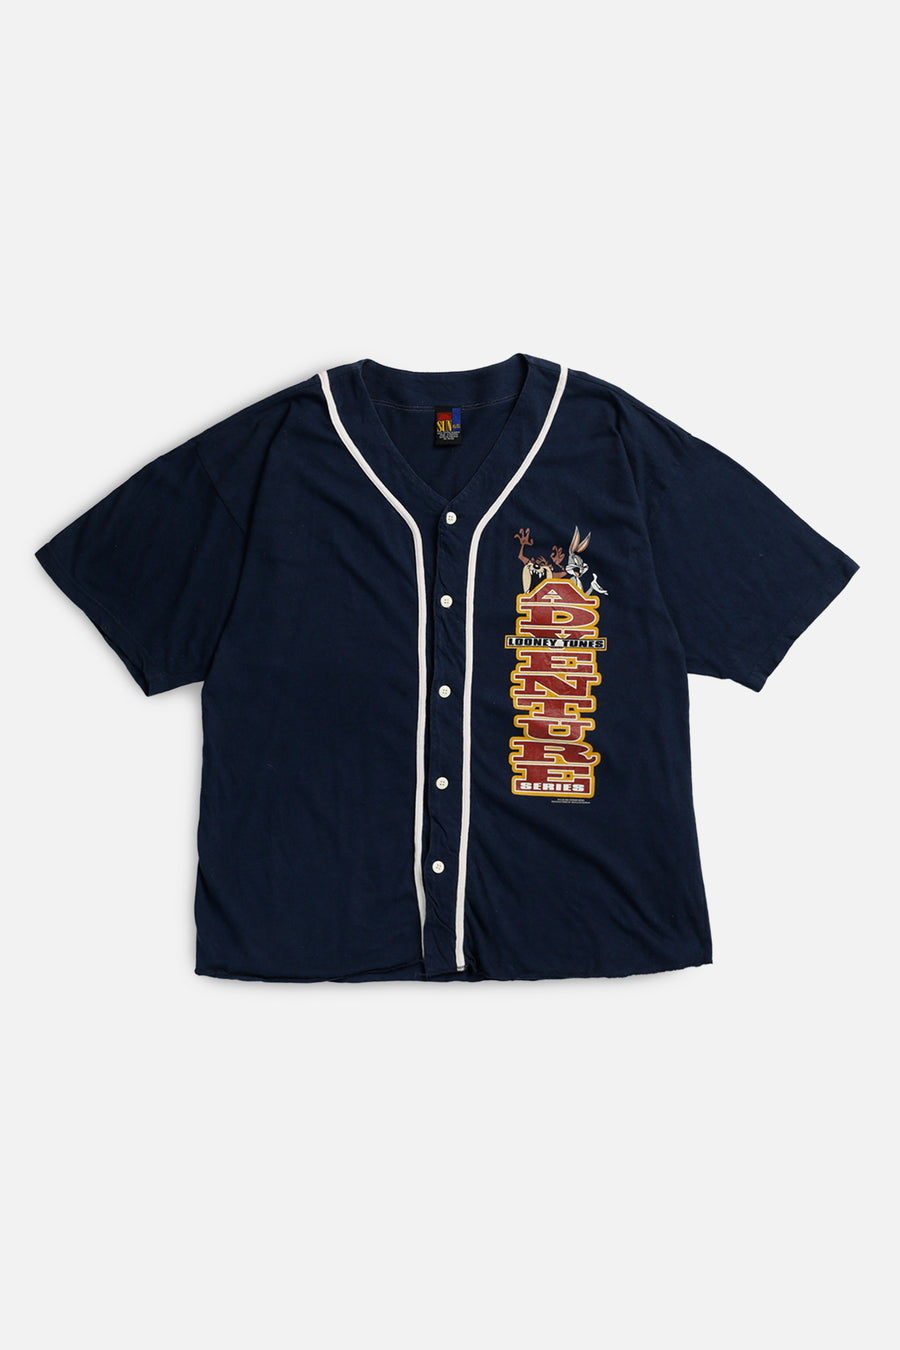 Vintage Baseball Jersey - XL